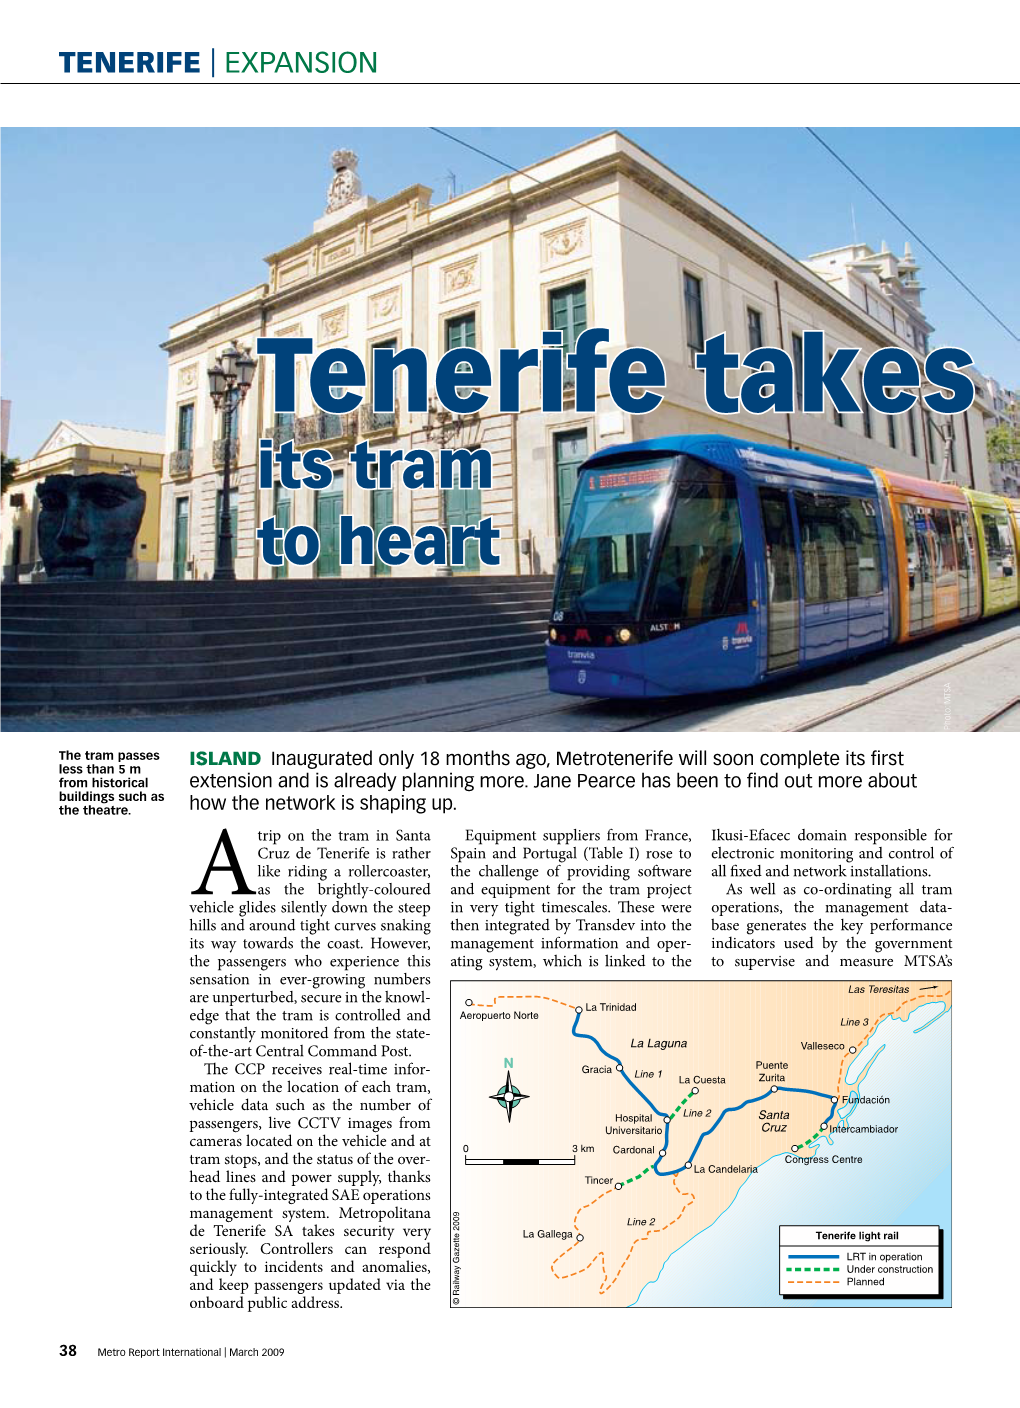 Tenerife Takes Its Tram to Heart Photo: MTSA Photo